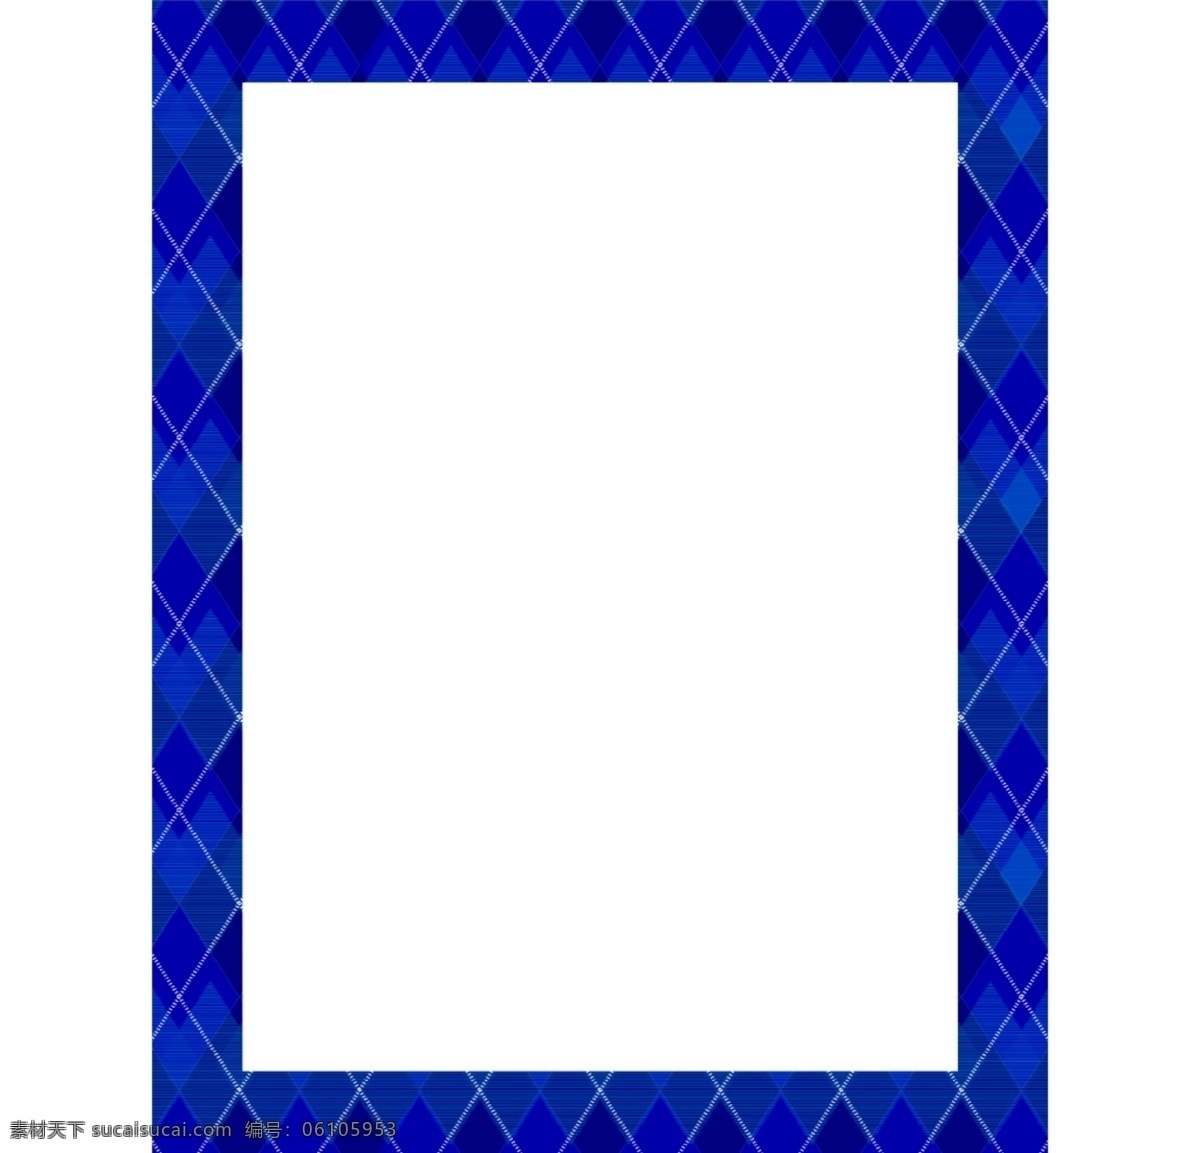 菱形 图案 方形 蓝色 边框 免 抠 透明 花边 装饰 图形 蓝色花边图形 蓝色边框素材 蓝色相框